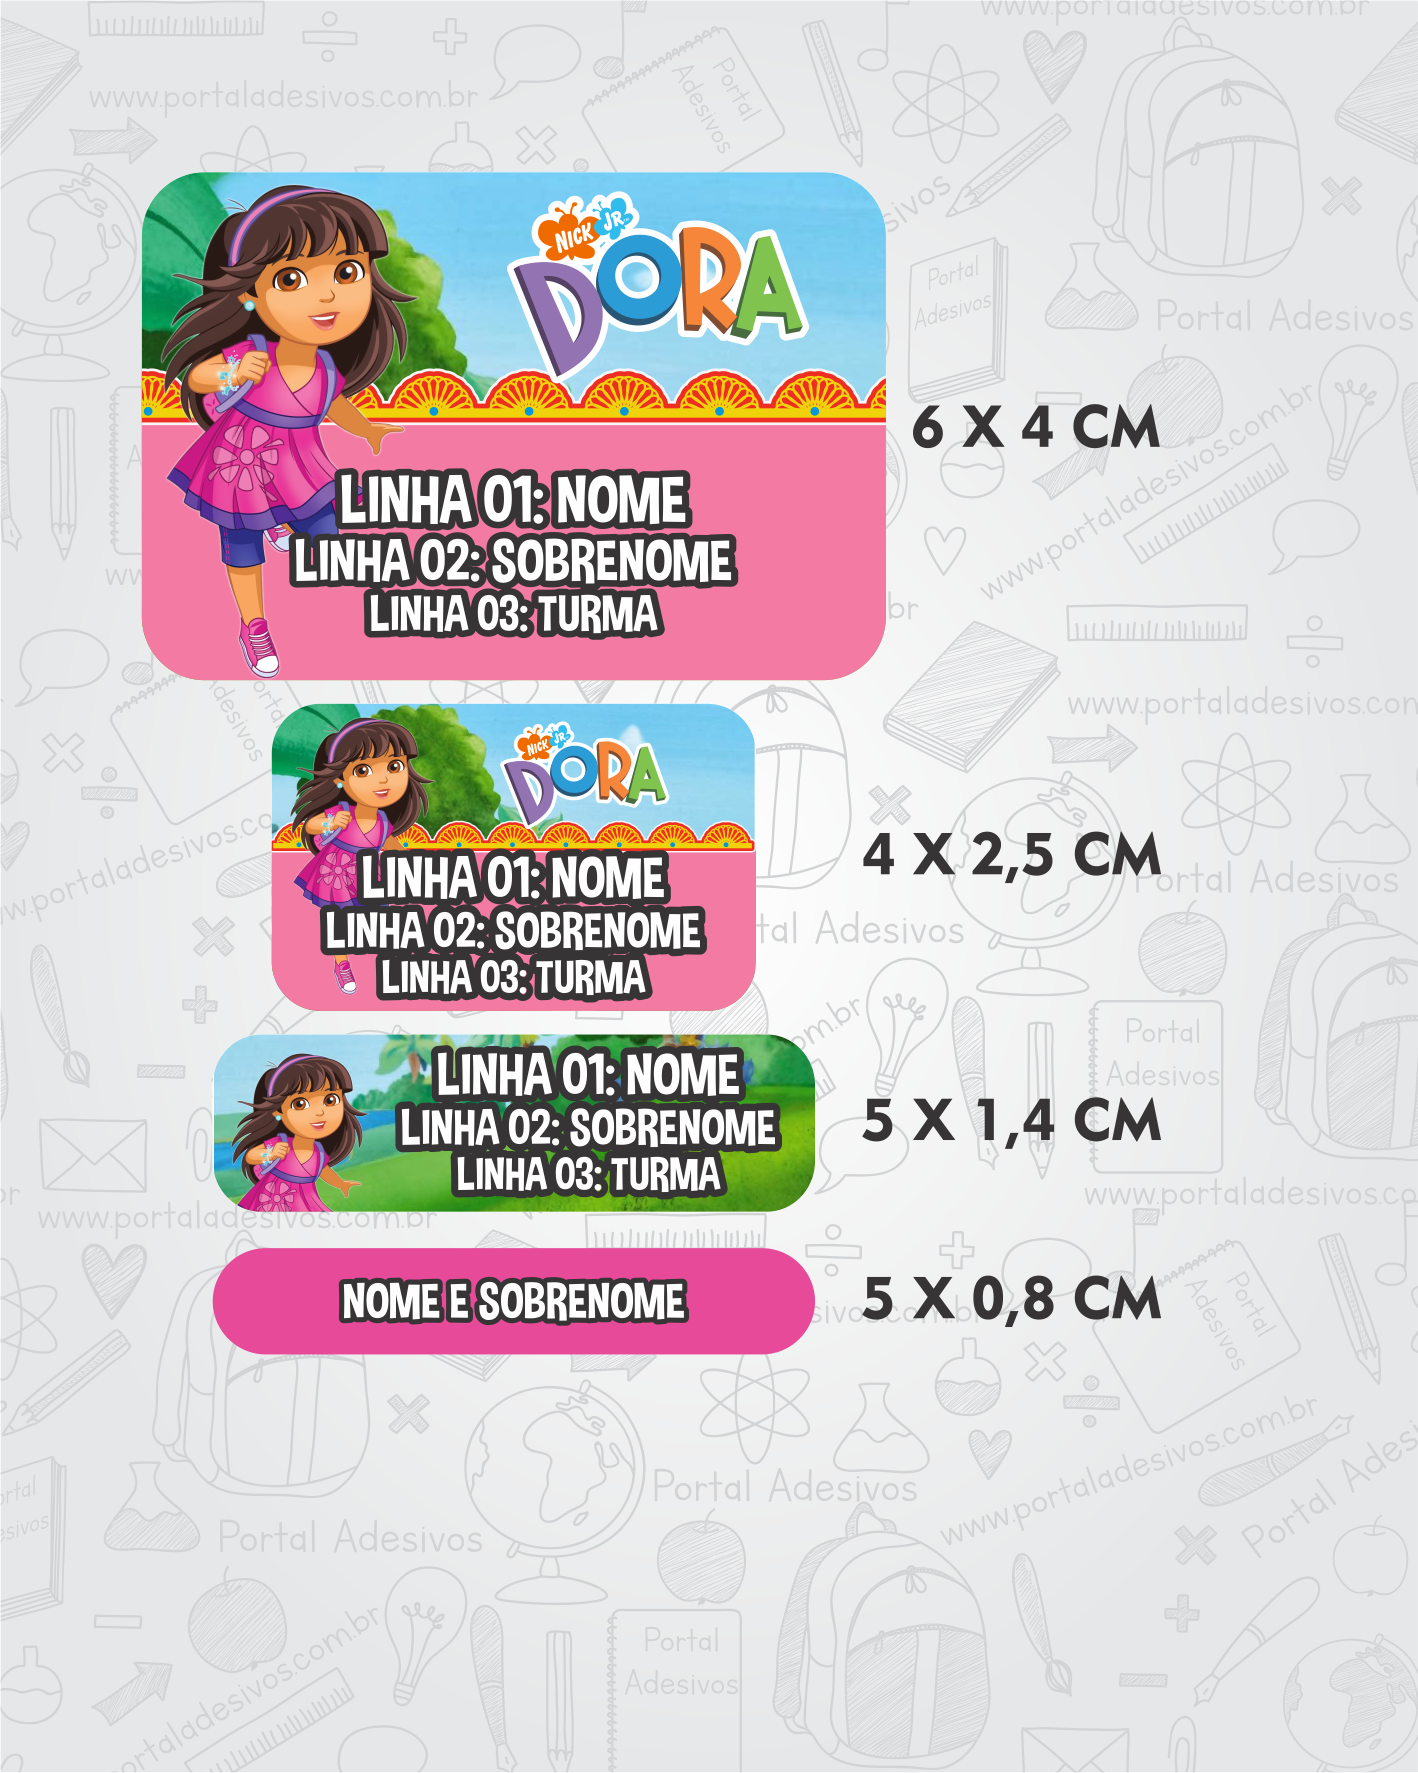 Encontre os 7 Erros da Dora Aventureira - Jogo Dos 7 Erros